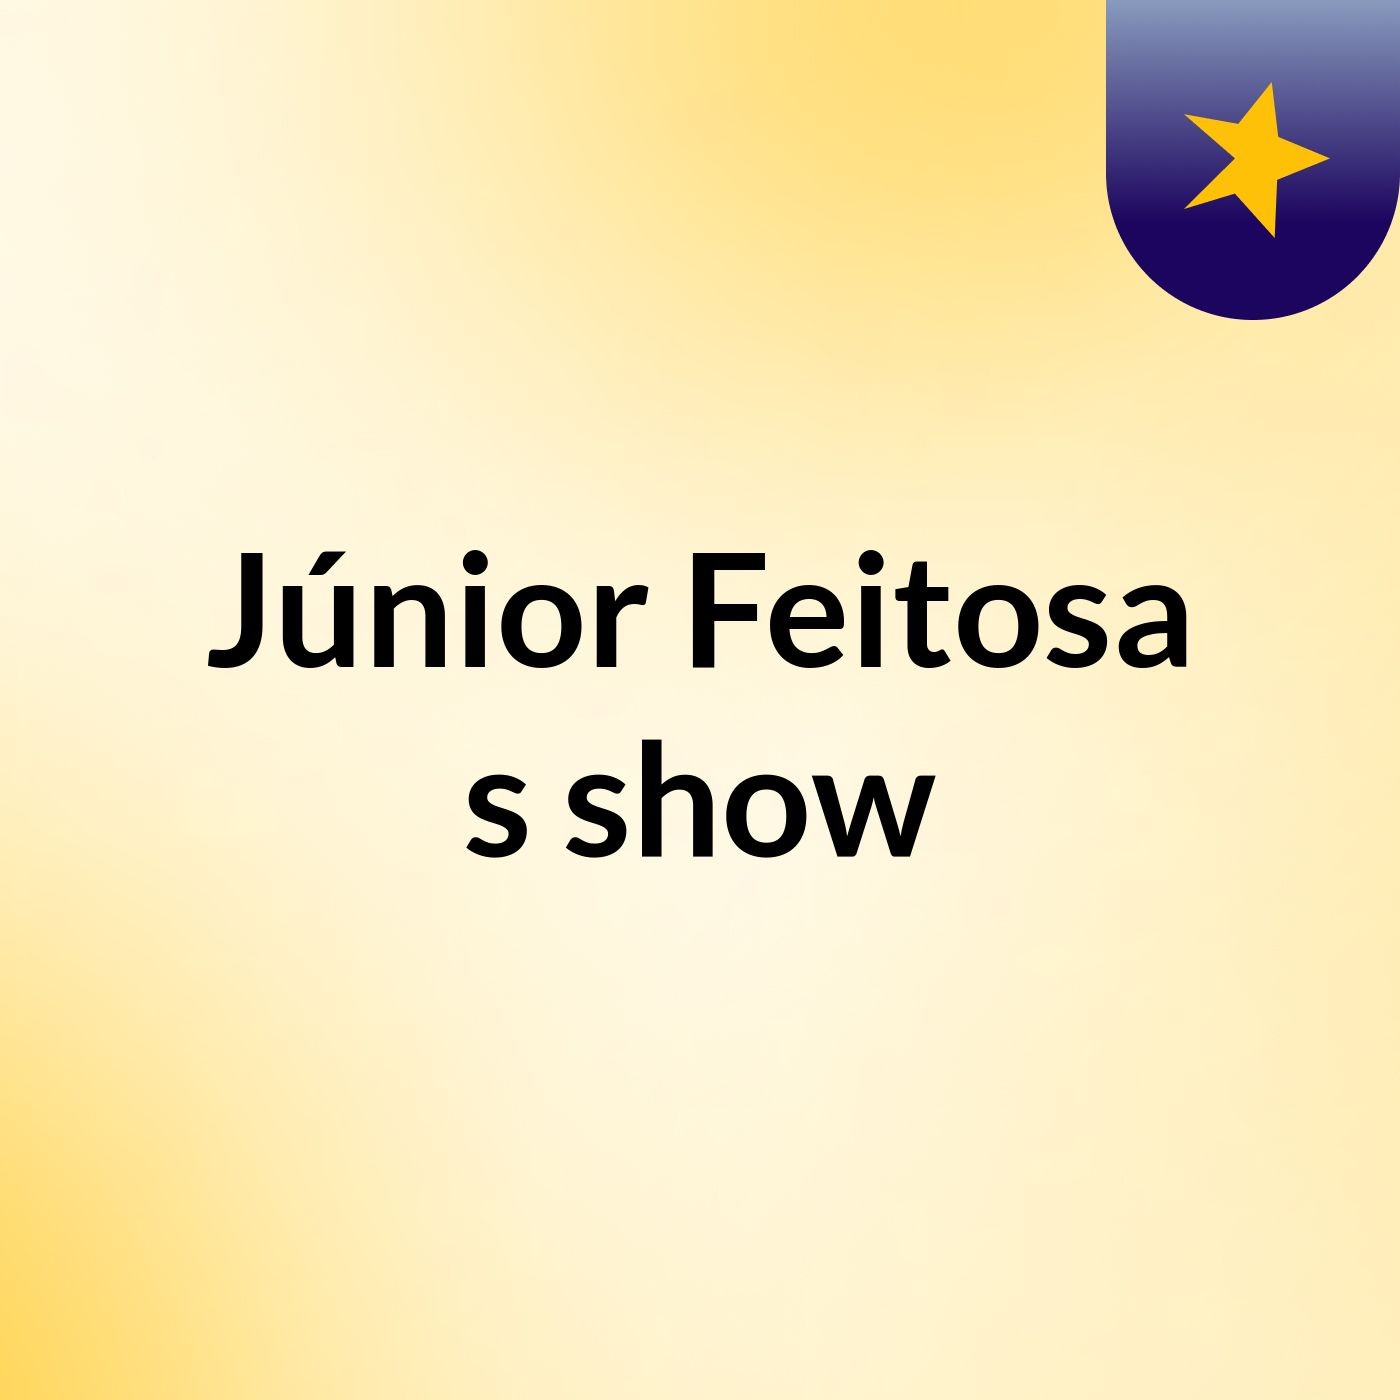 Júnior Feitosa's show